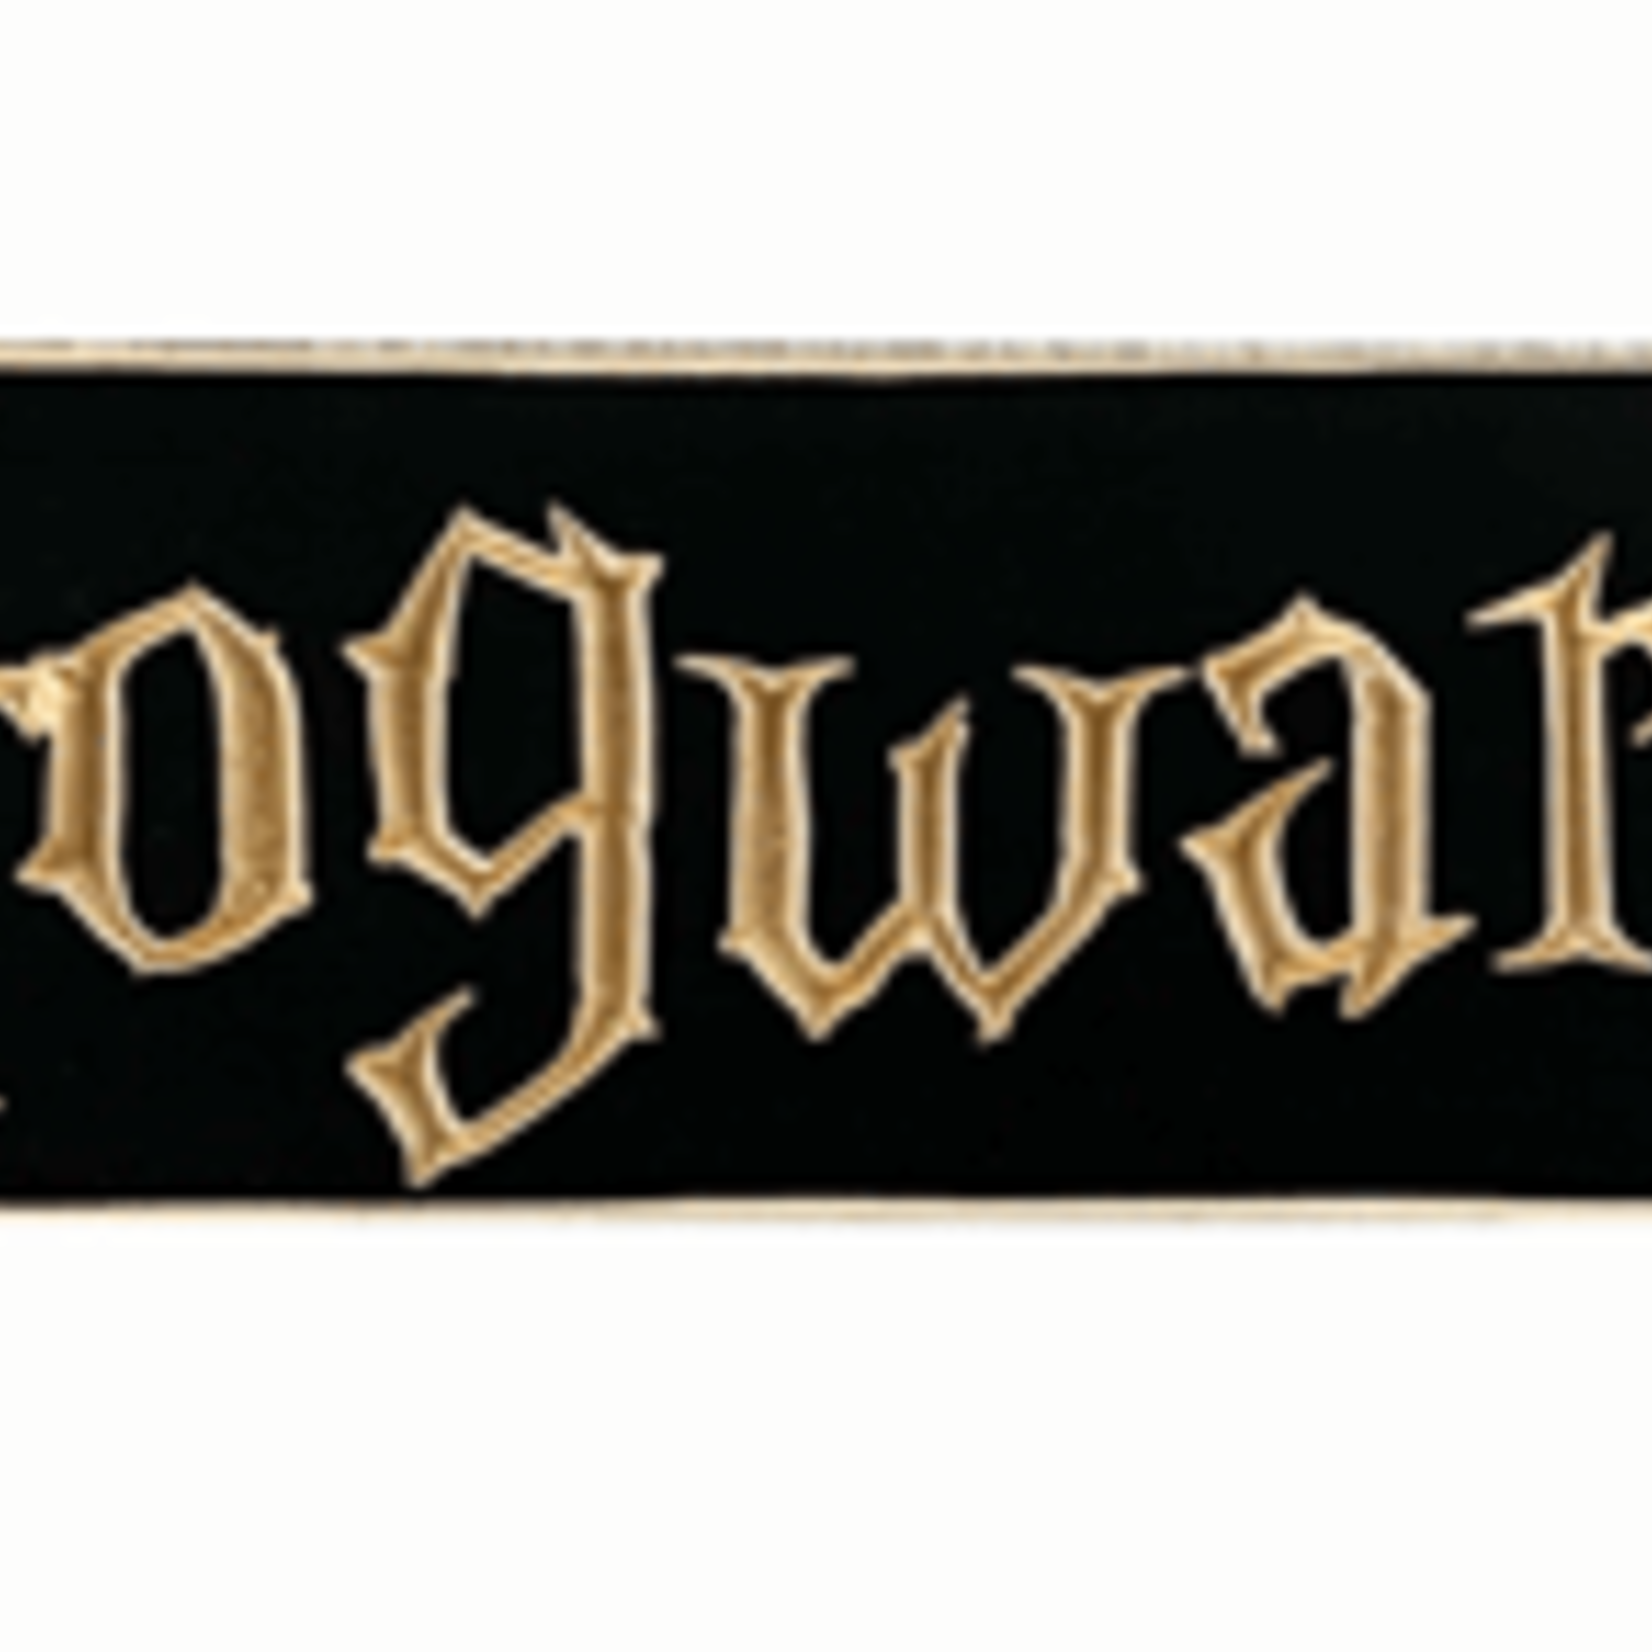 Hogwartz - 2' Wooden Sign